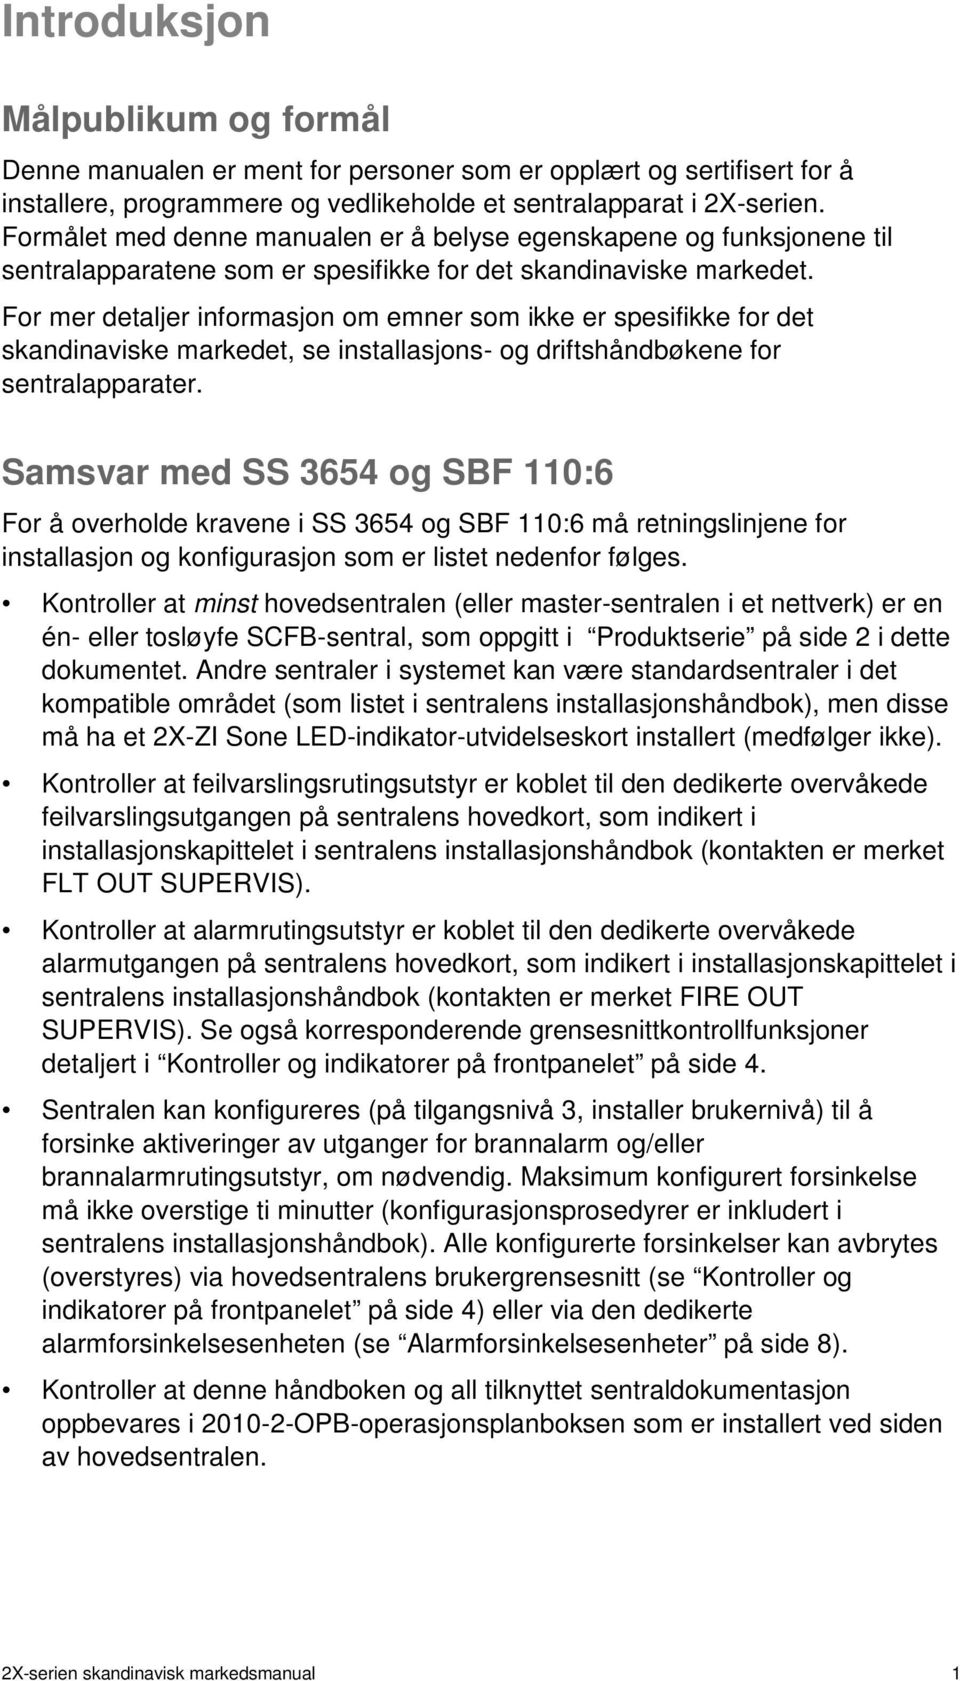 For mer detaljer informasjon om emner som ikke er spesifikke for det skandinaviske markedet, se installasjons- og driftshåndbøkene for sentralapparater.